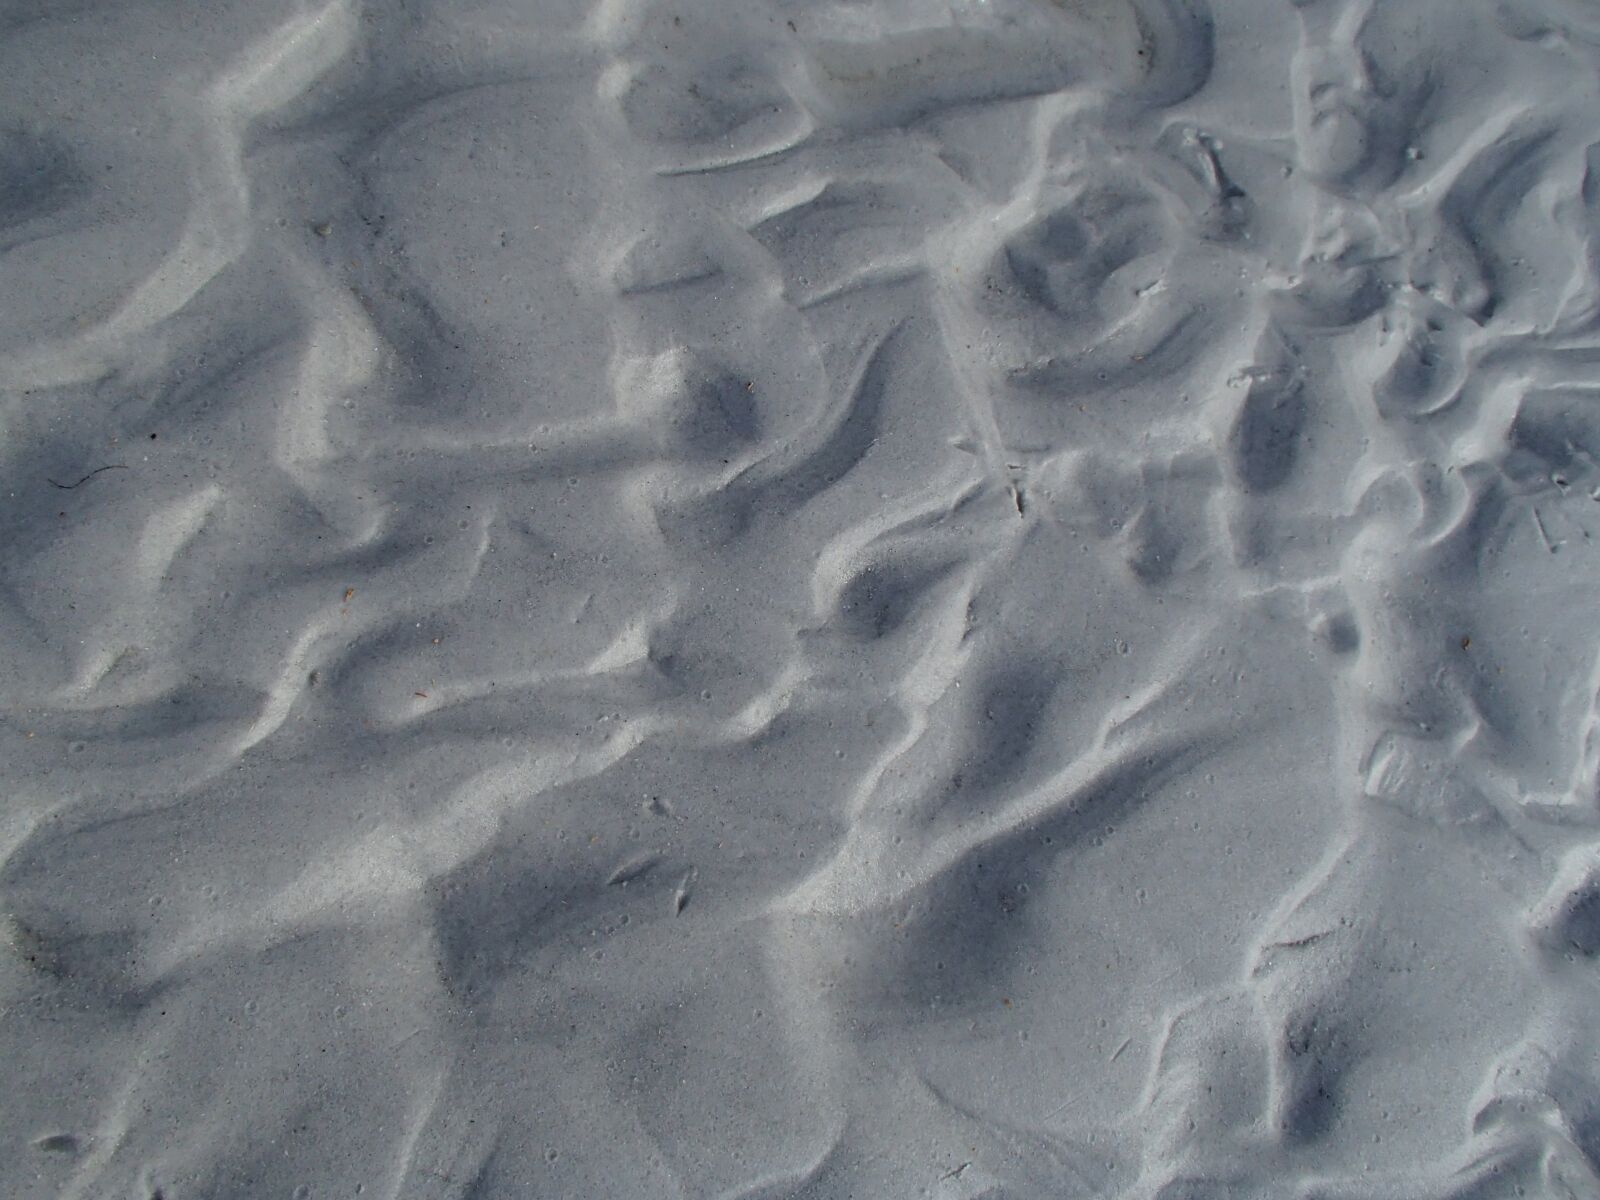 Olympus TG-620 sample photo. Sand, beach, beach sand photography